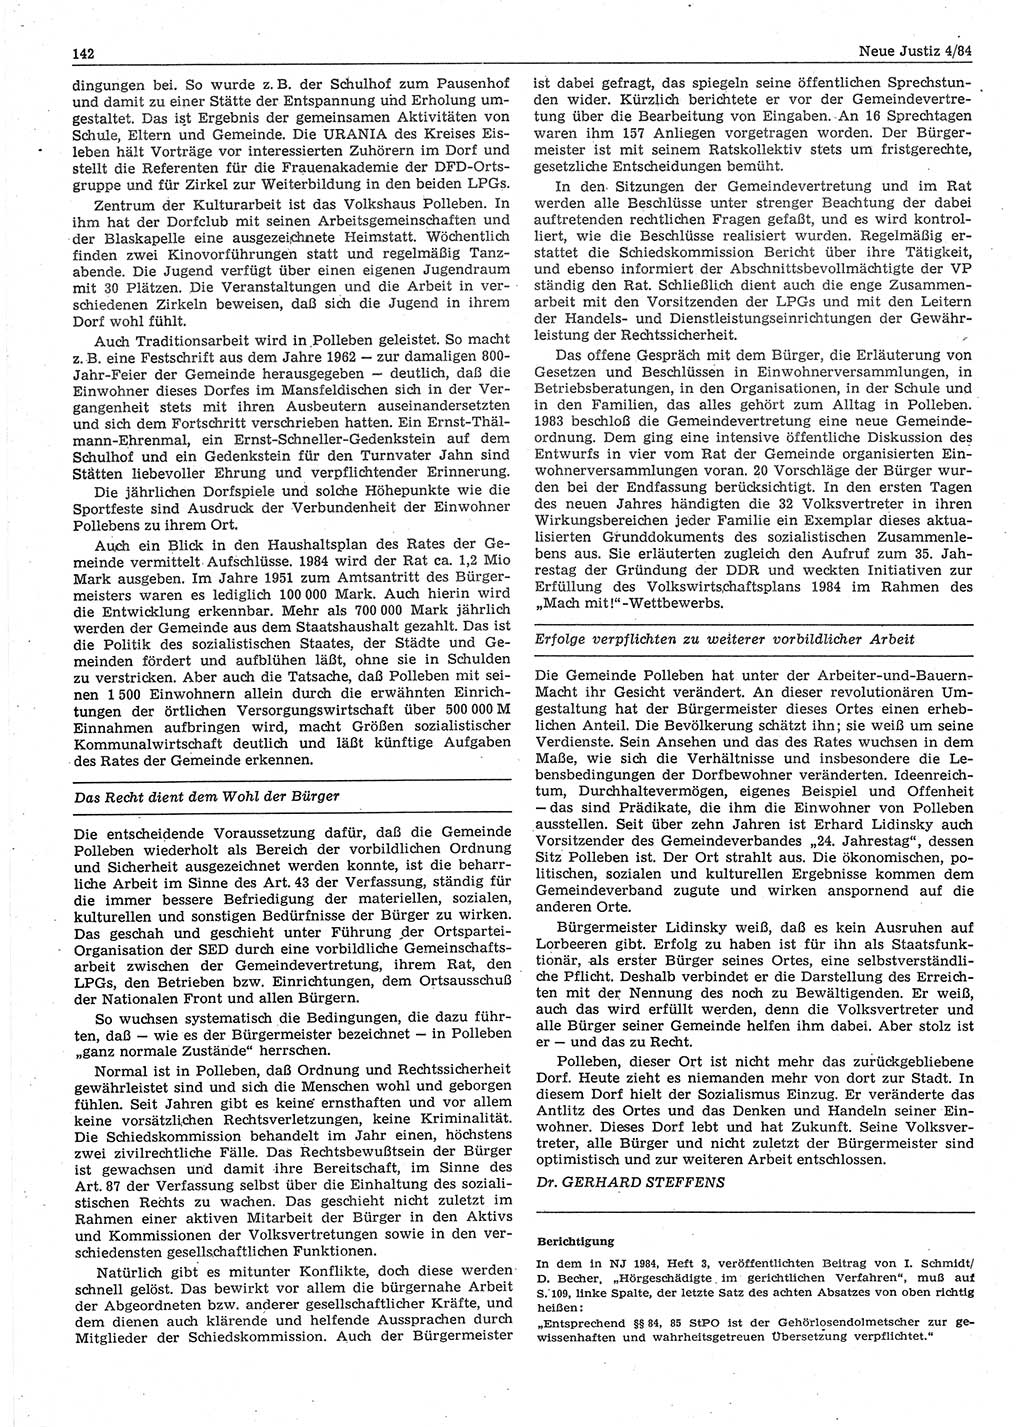 Neue Justiz (NJ), Zeitschrift für sozialistisches Recht und Gesetzlichkeit [Deutsche Demokratische Republik (DDR)], 38. Jahrgang 1984, Seite 142 (NJ DDR 1984, S. 142)